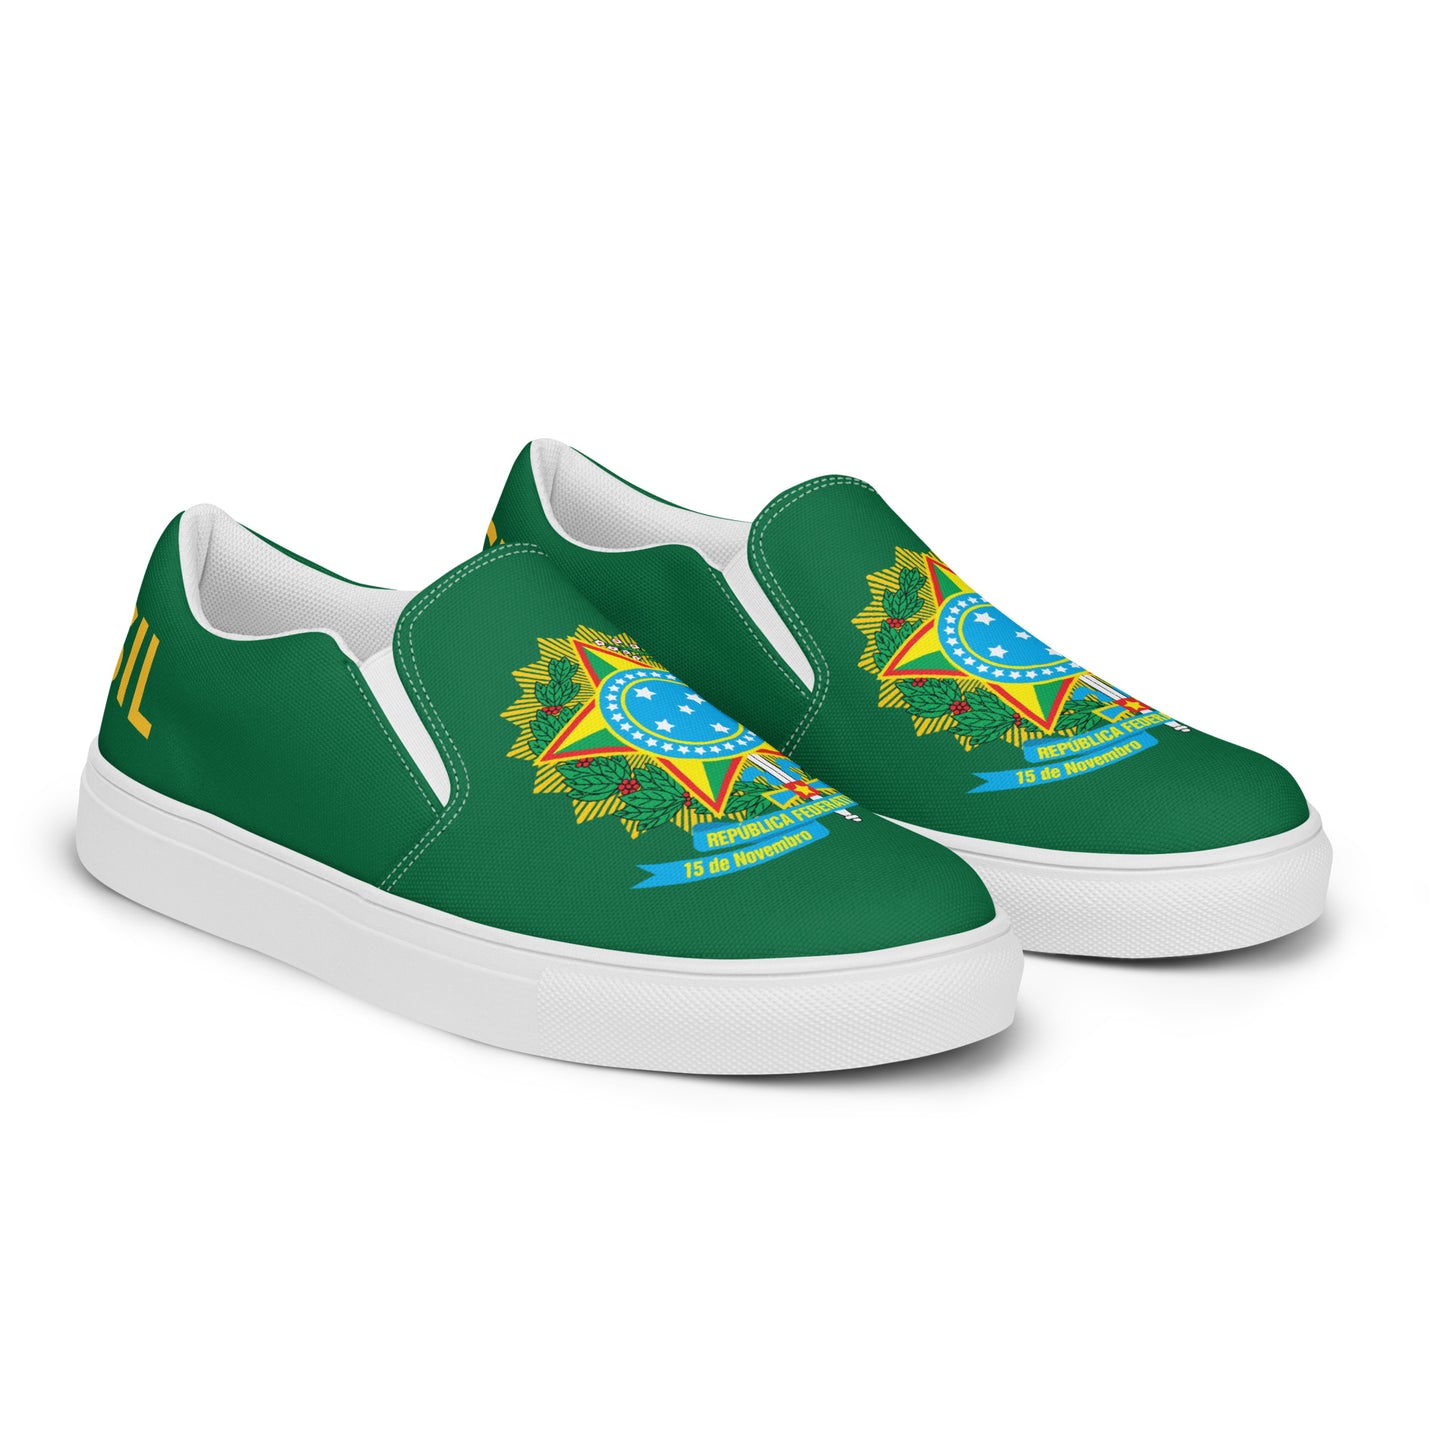 Brasil - Women - Green - Slip-on shoes